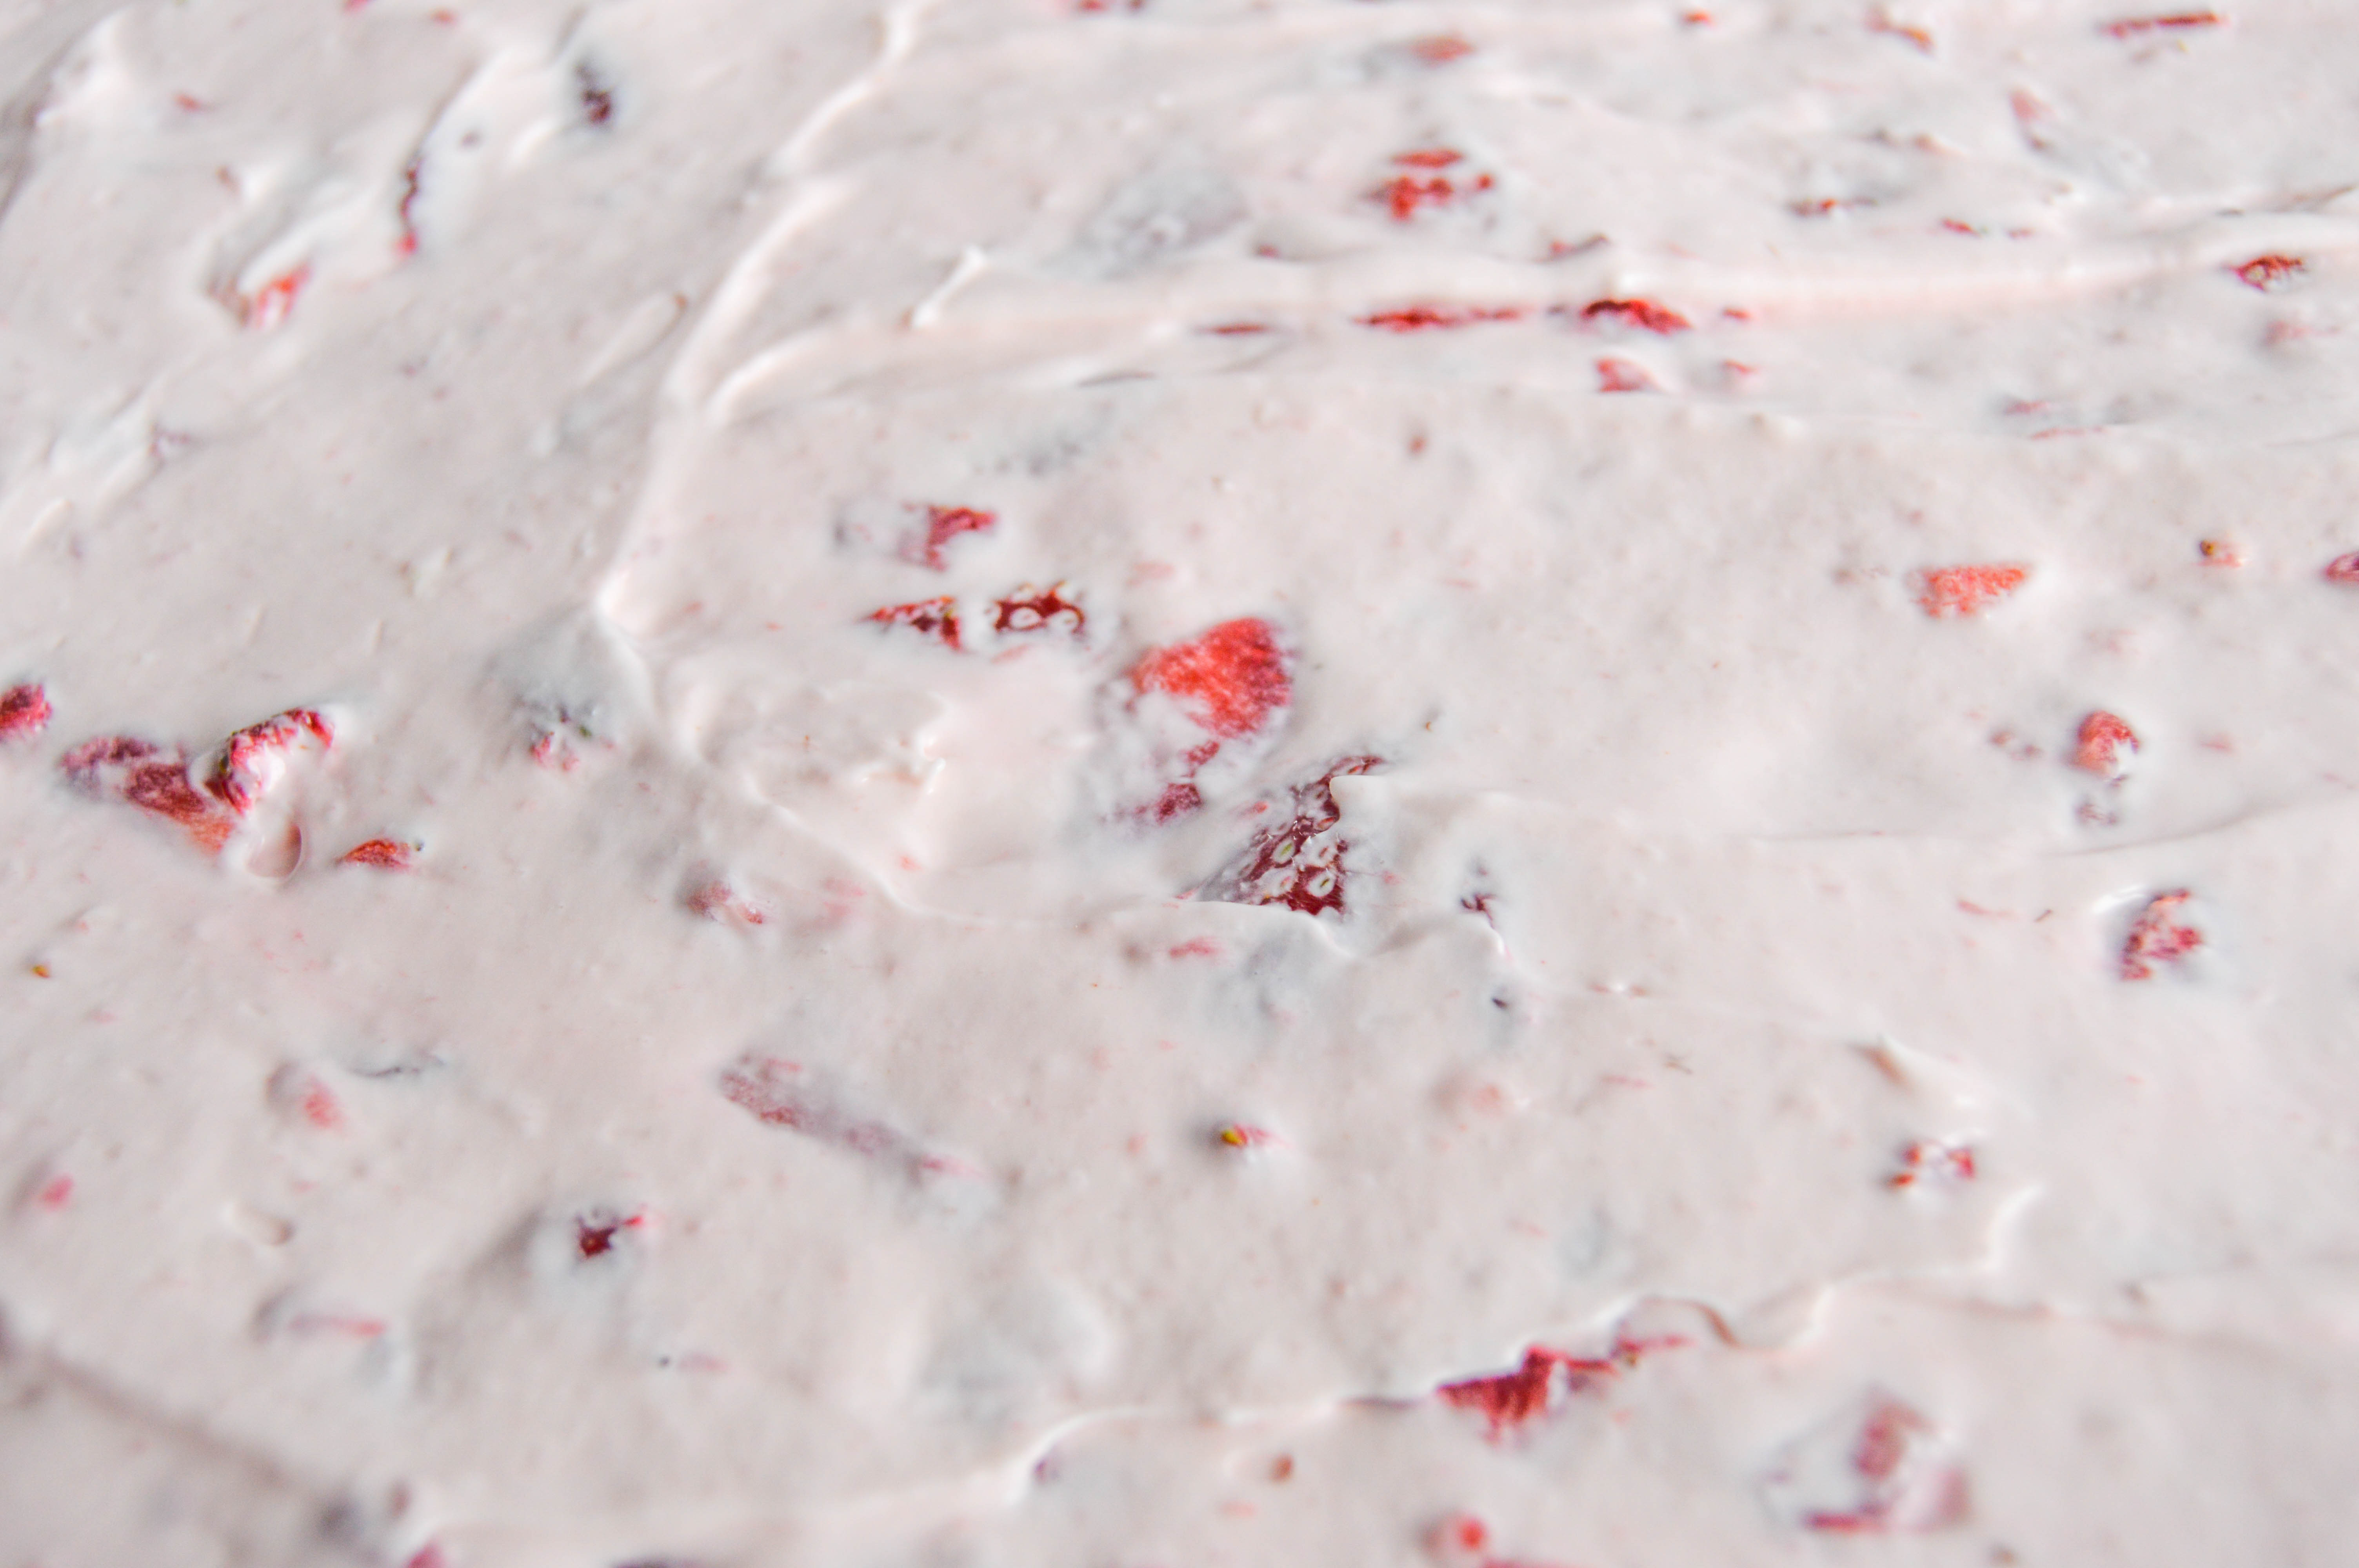 Strawberry vanilla lush - making the cheesecake layer